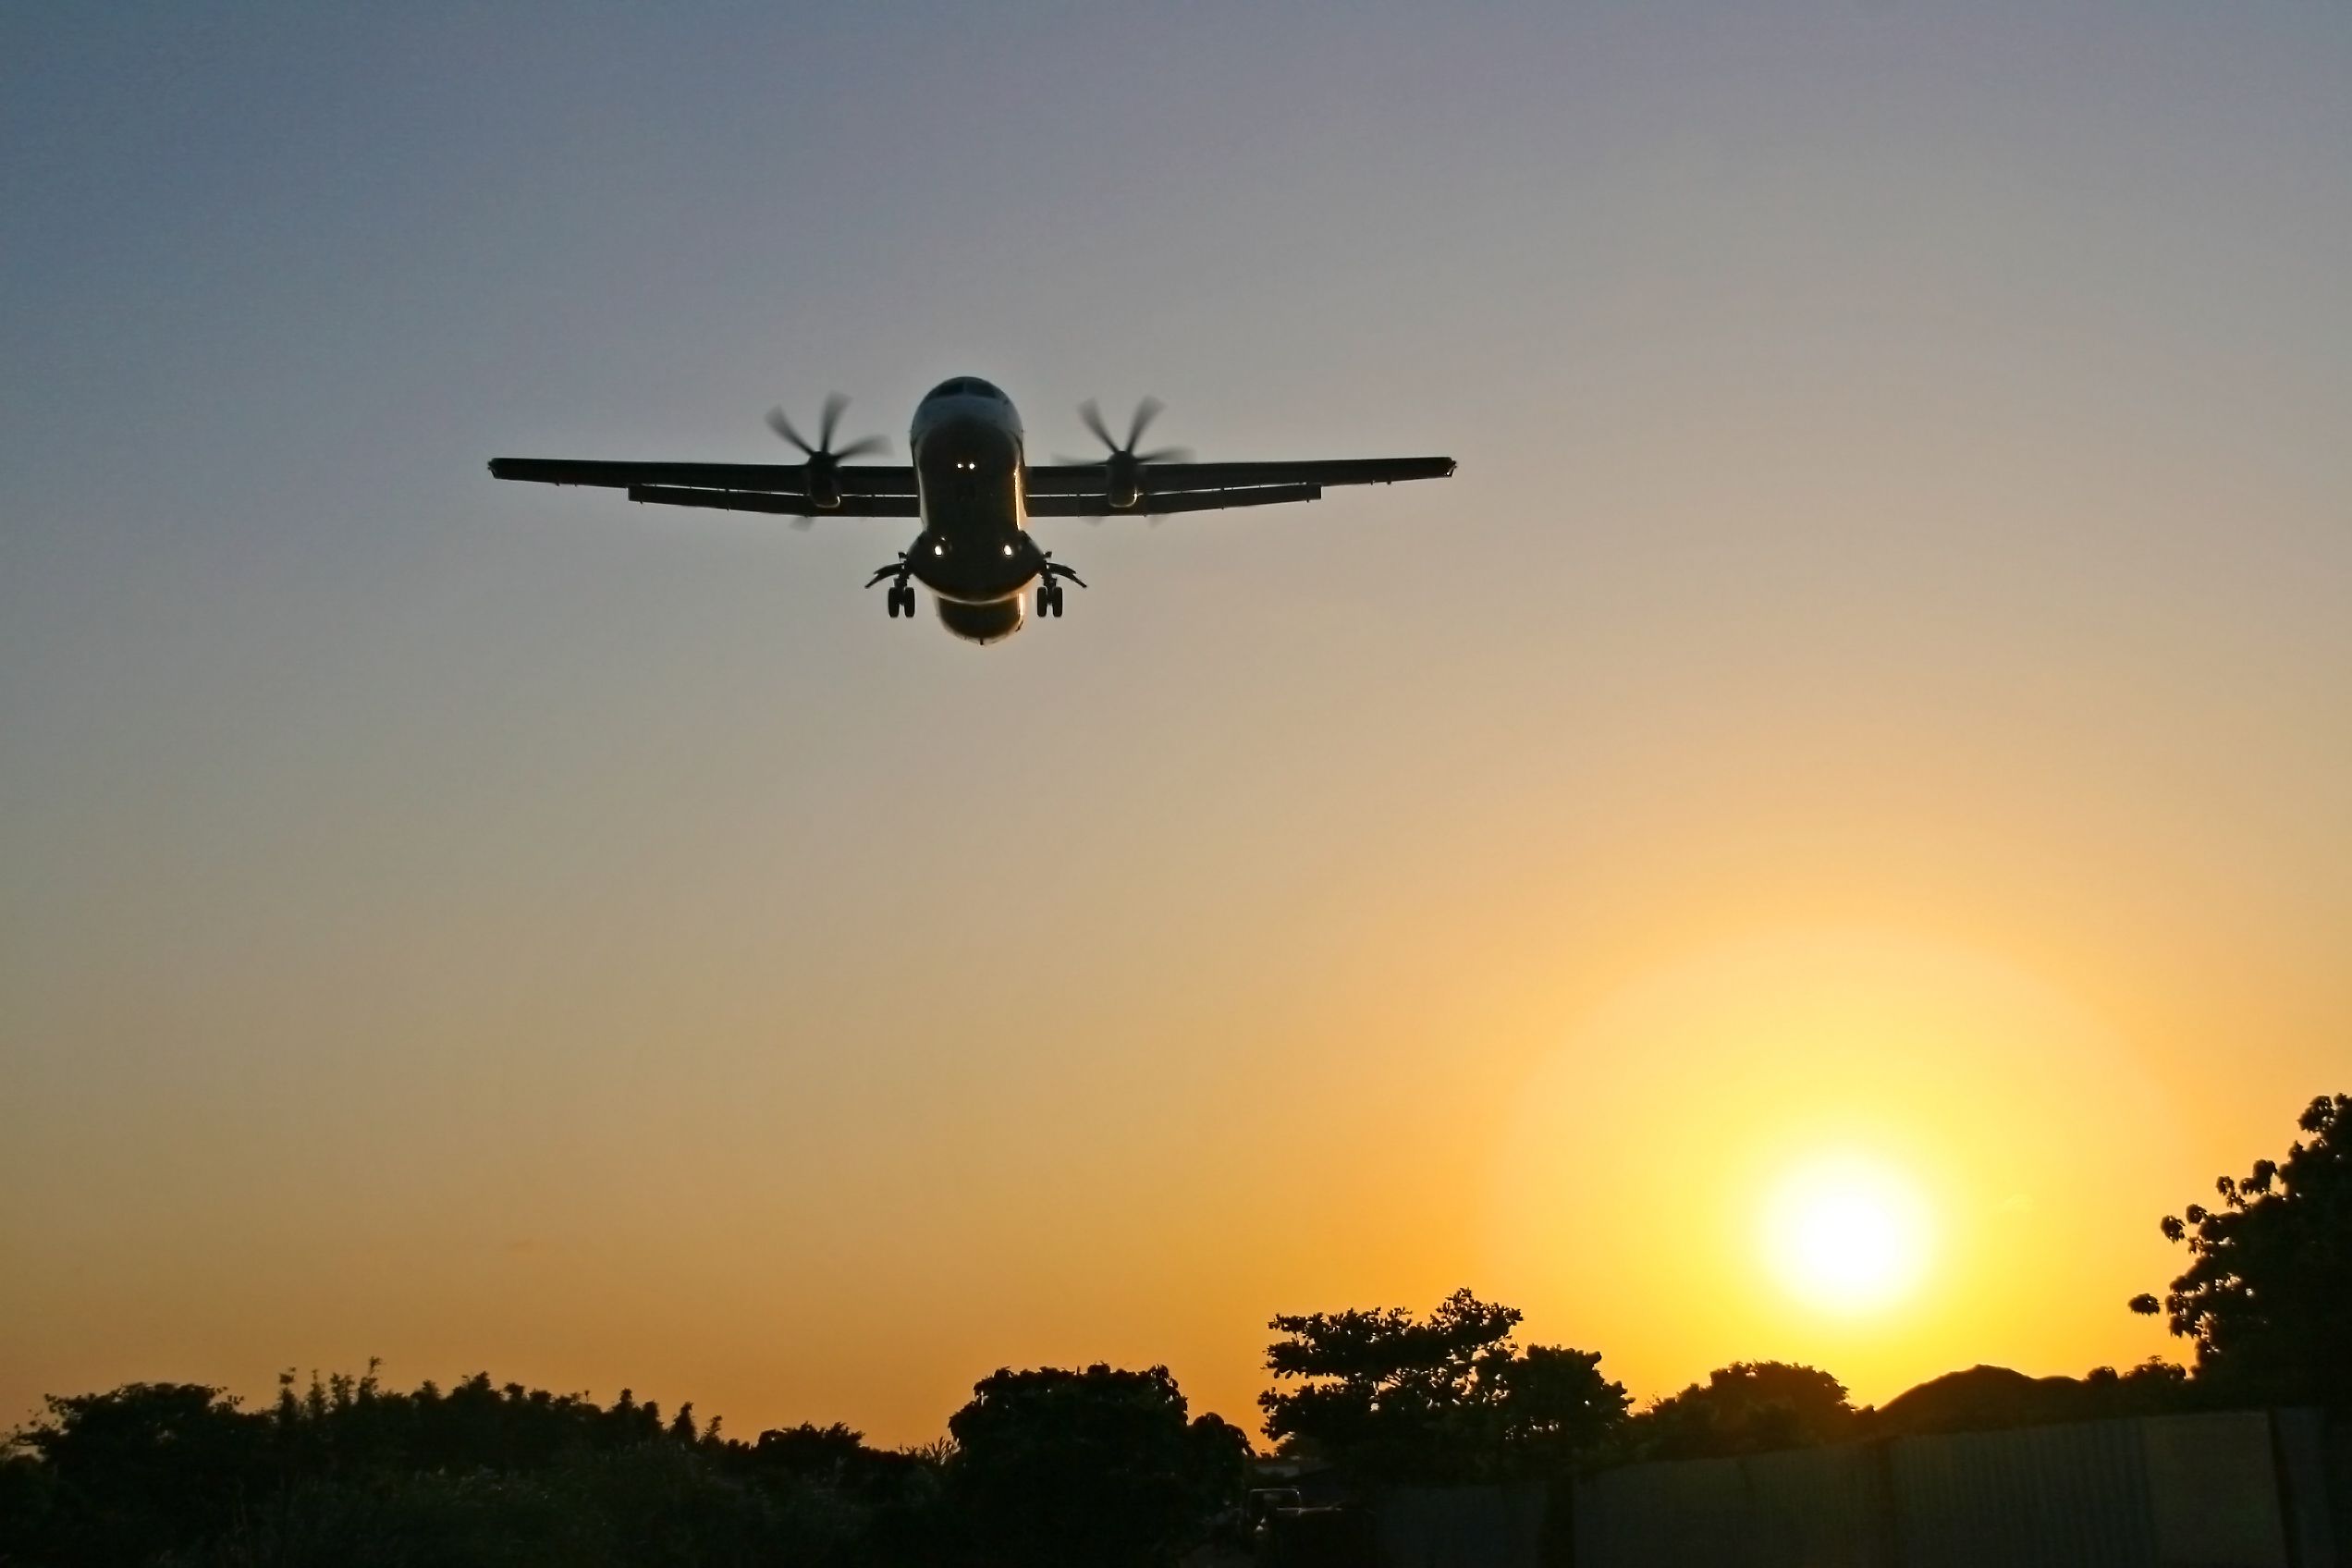 An ATR aircraft flies at low attitude and beautiful sunset behind